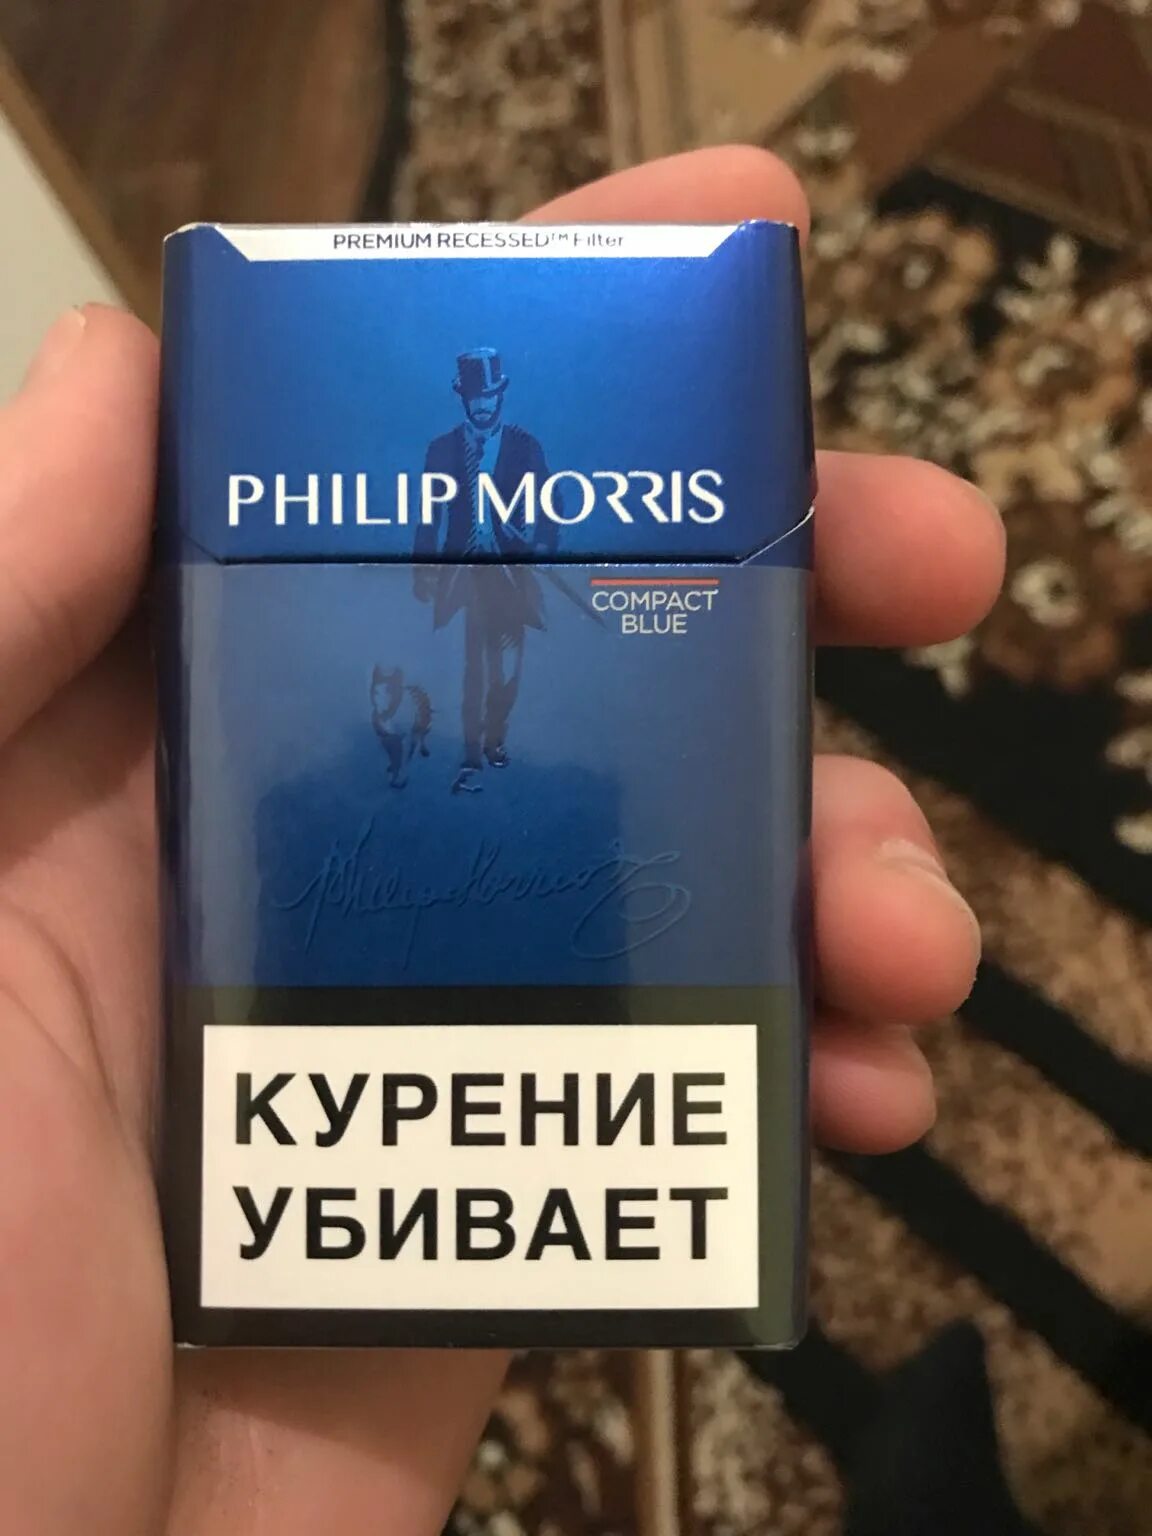 Сигареты филипс. Филипс Морис компакт Блю. Сигареты с фильтром "Philip Morris Compact Blue".